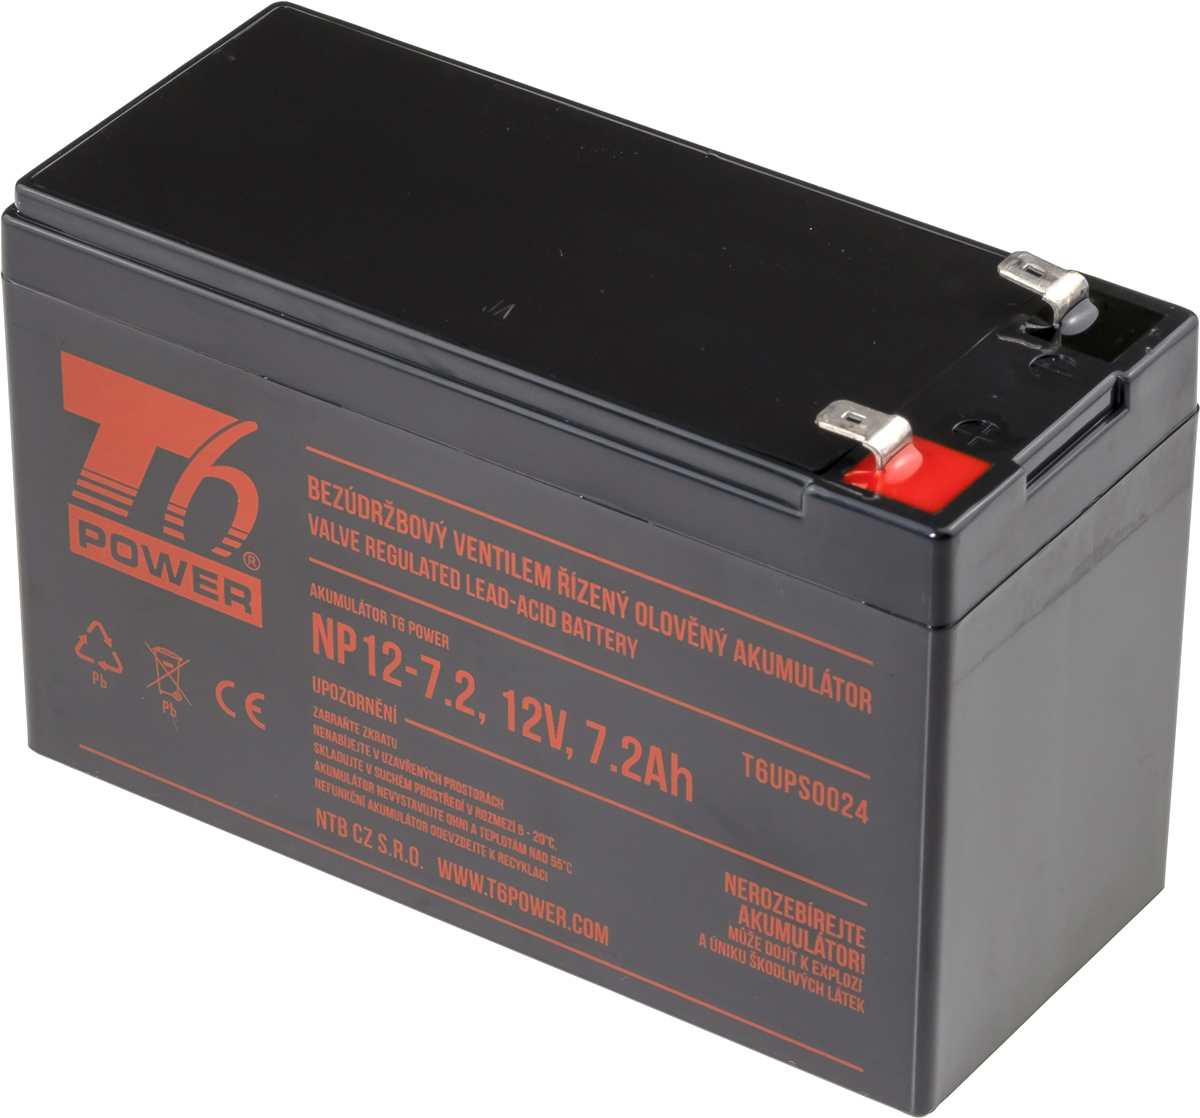 Obrázek T6 Power RBC2, RBC110, RBC40 - battery KIT